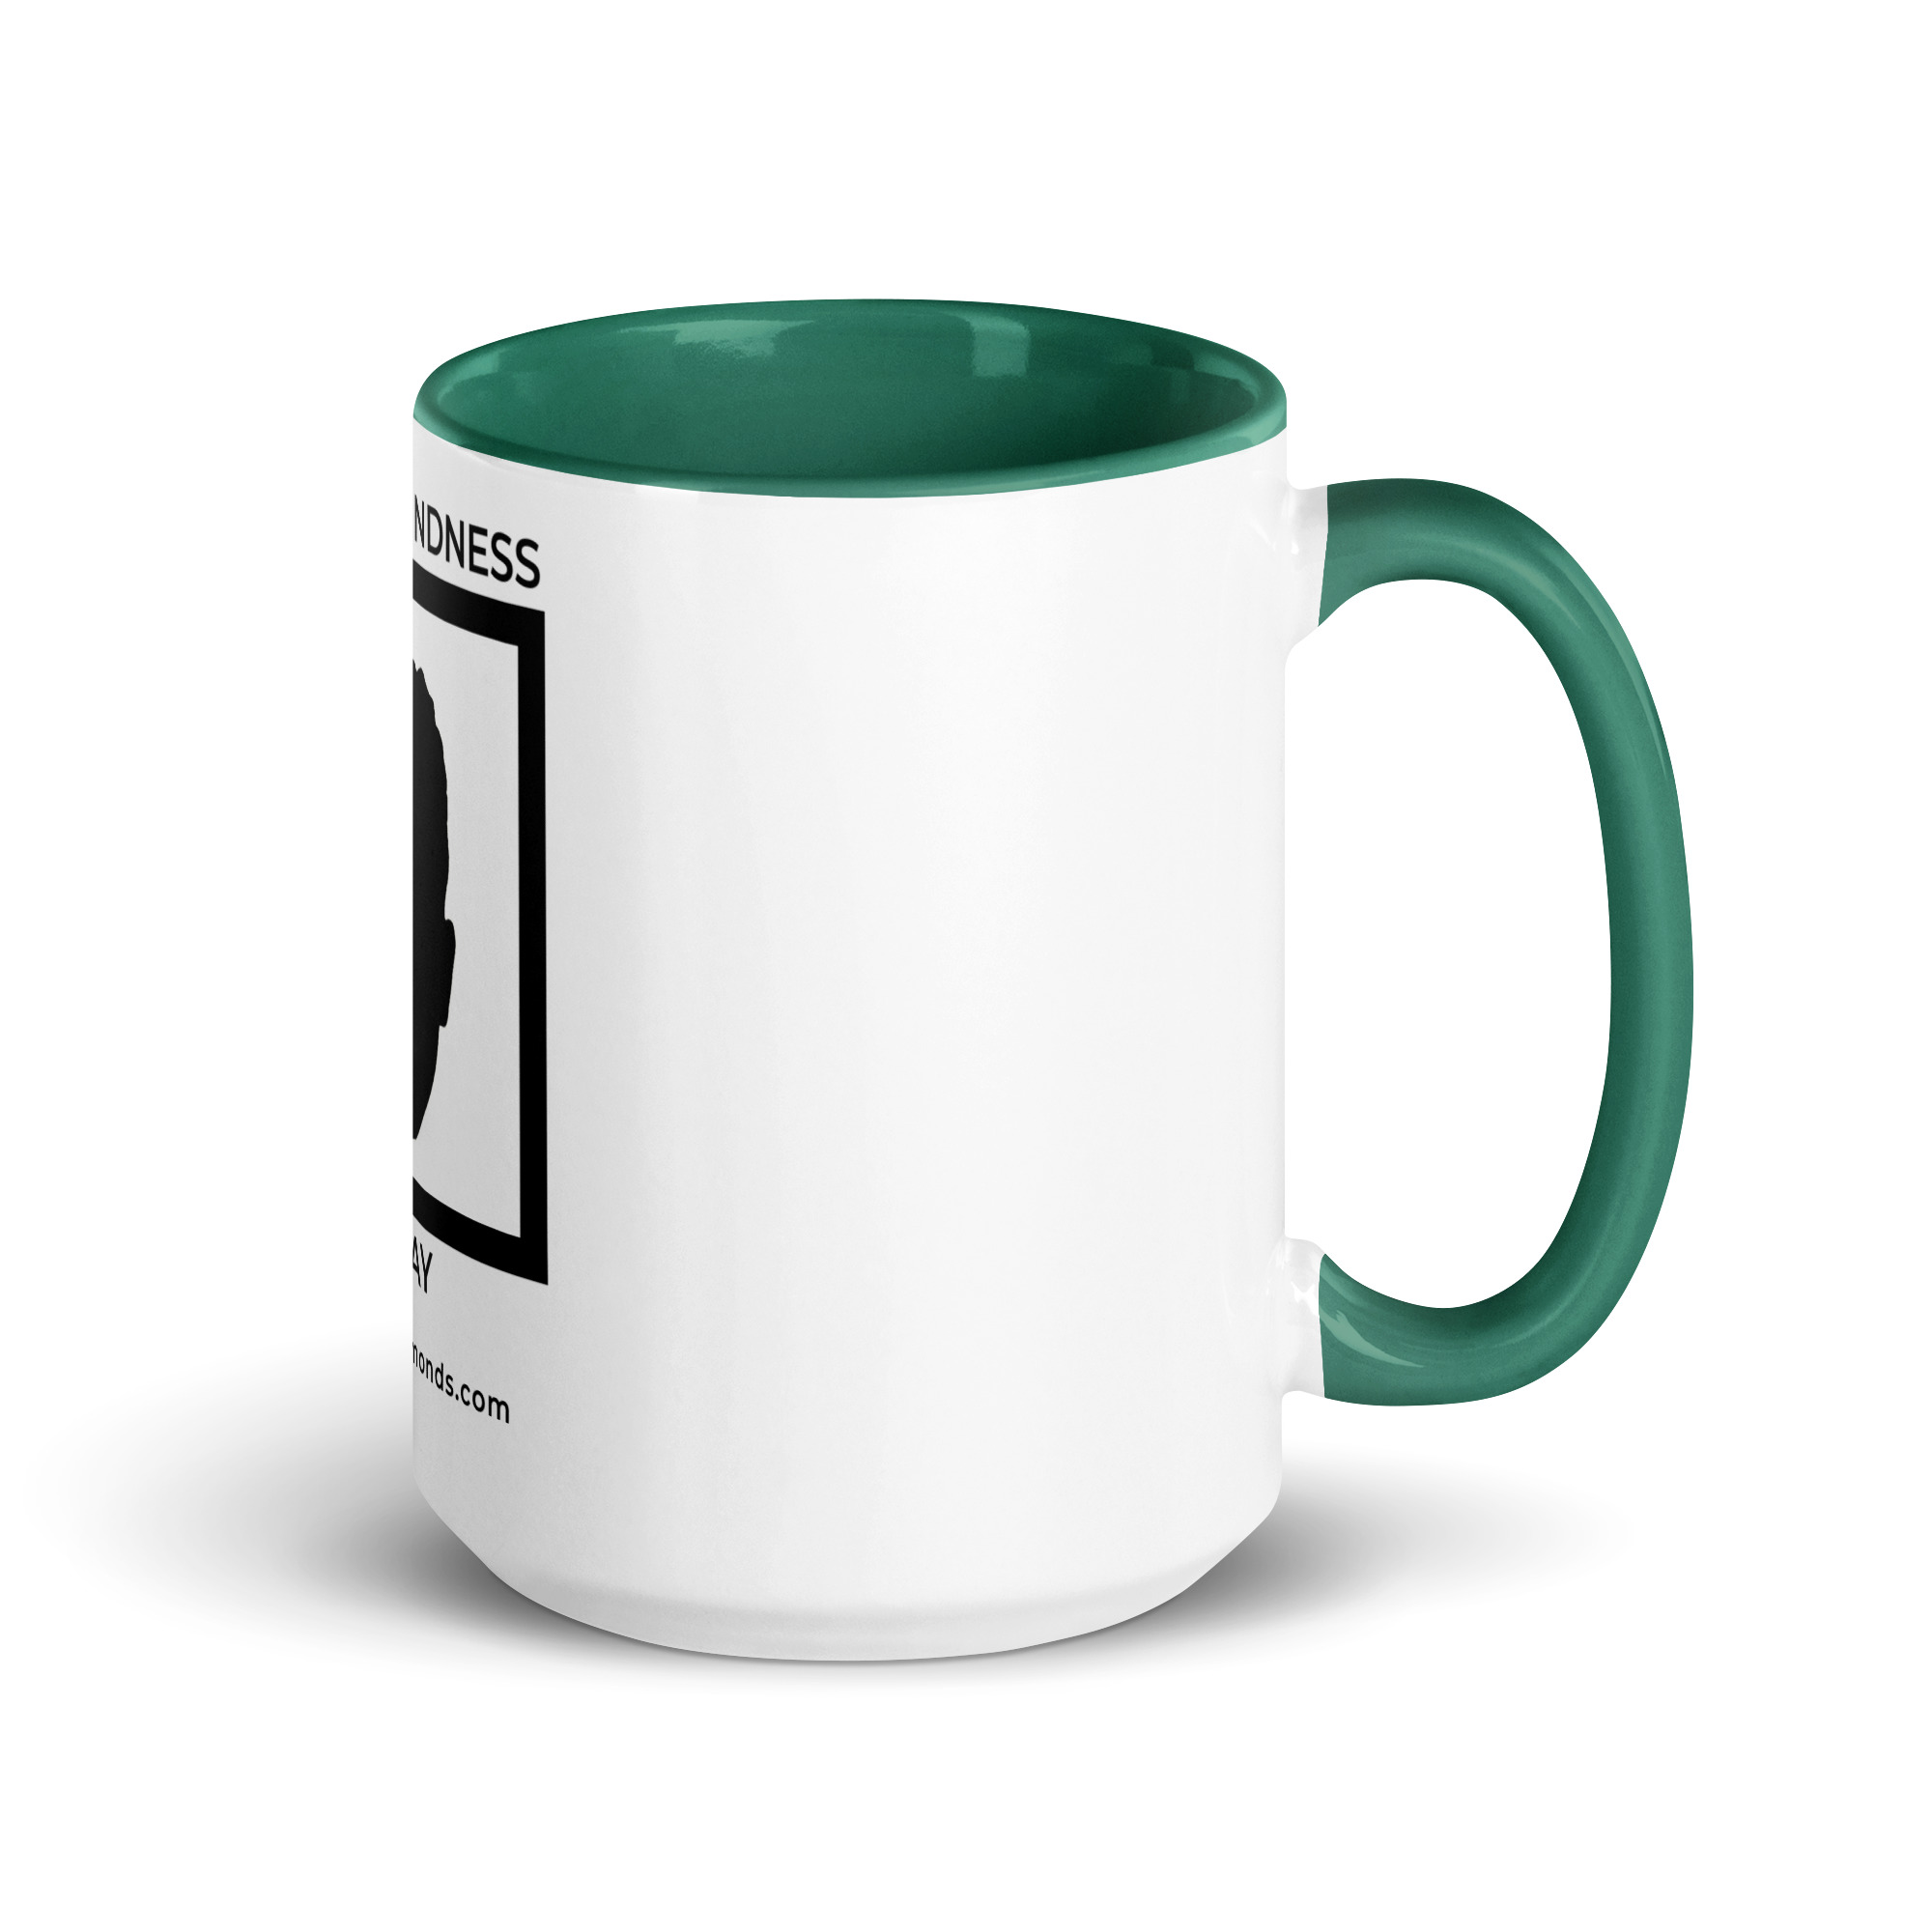 white-ceramic-mug-with-color-inside-dark-green-15-oz-right-6522a1a403e9a.jpg